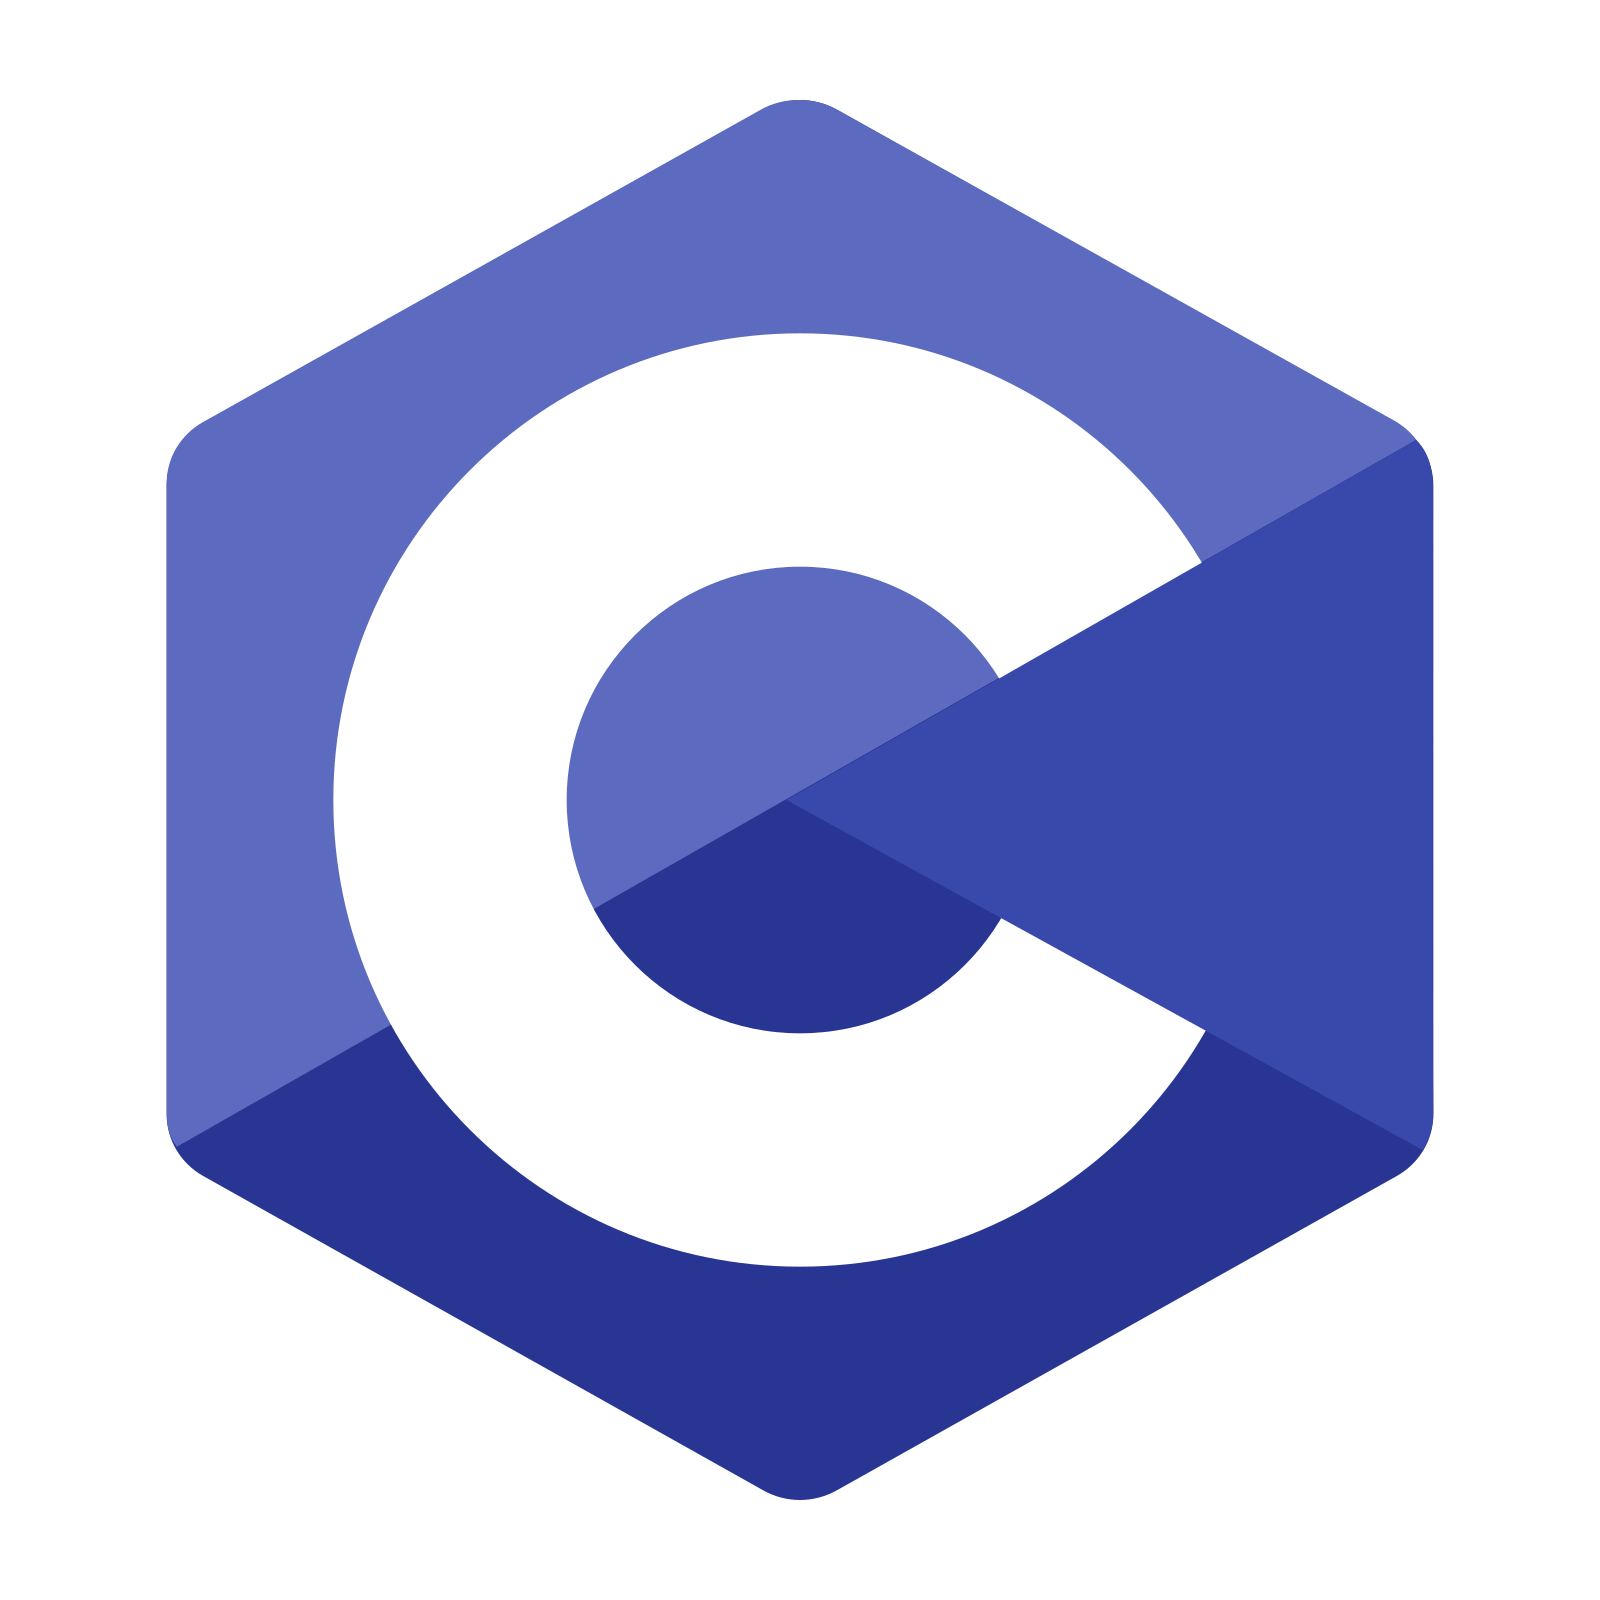 c-programming-logo